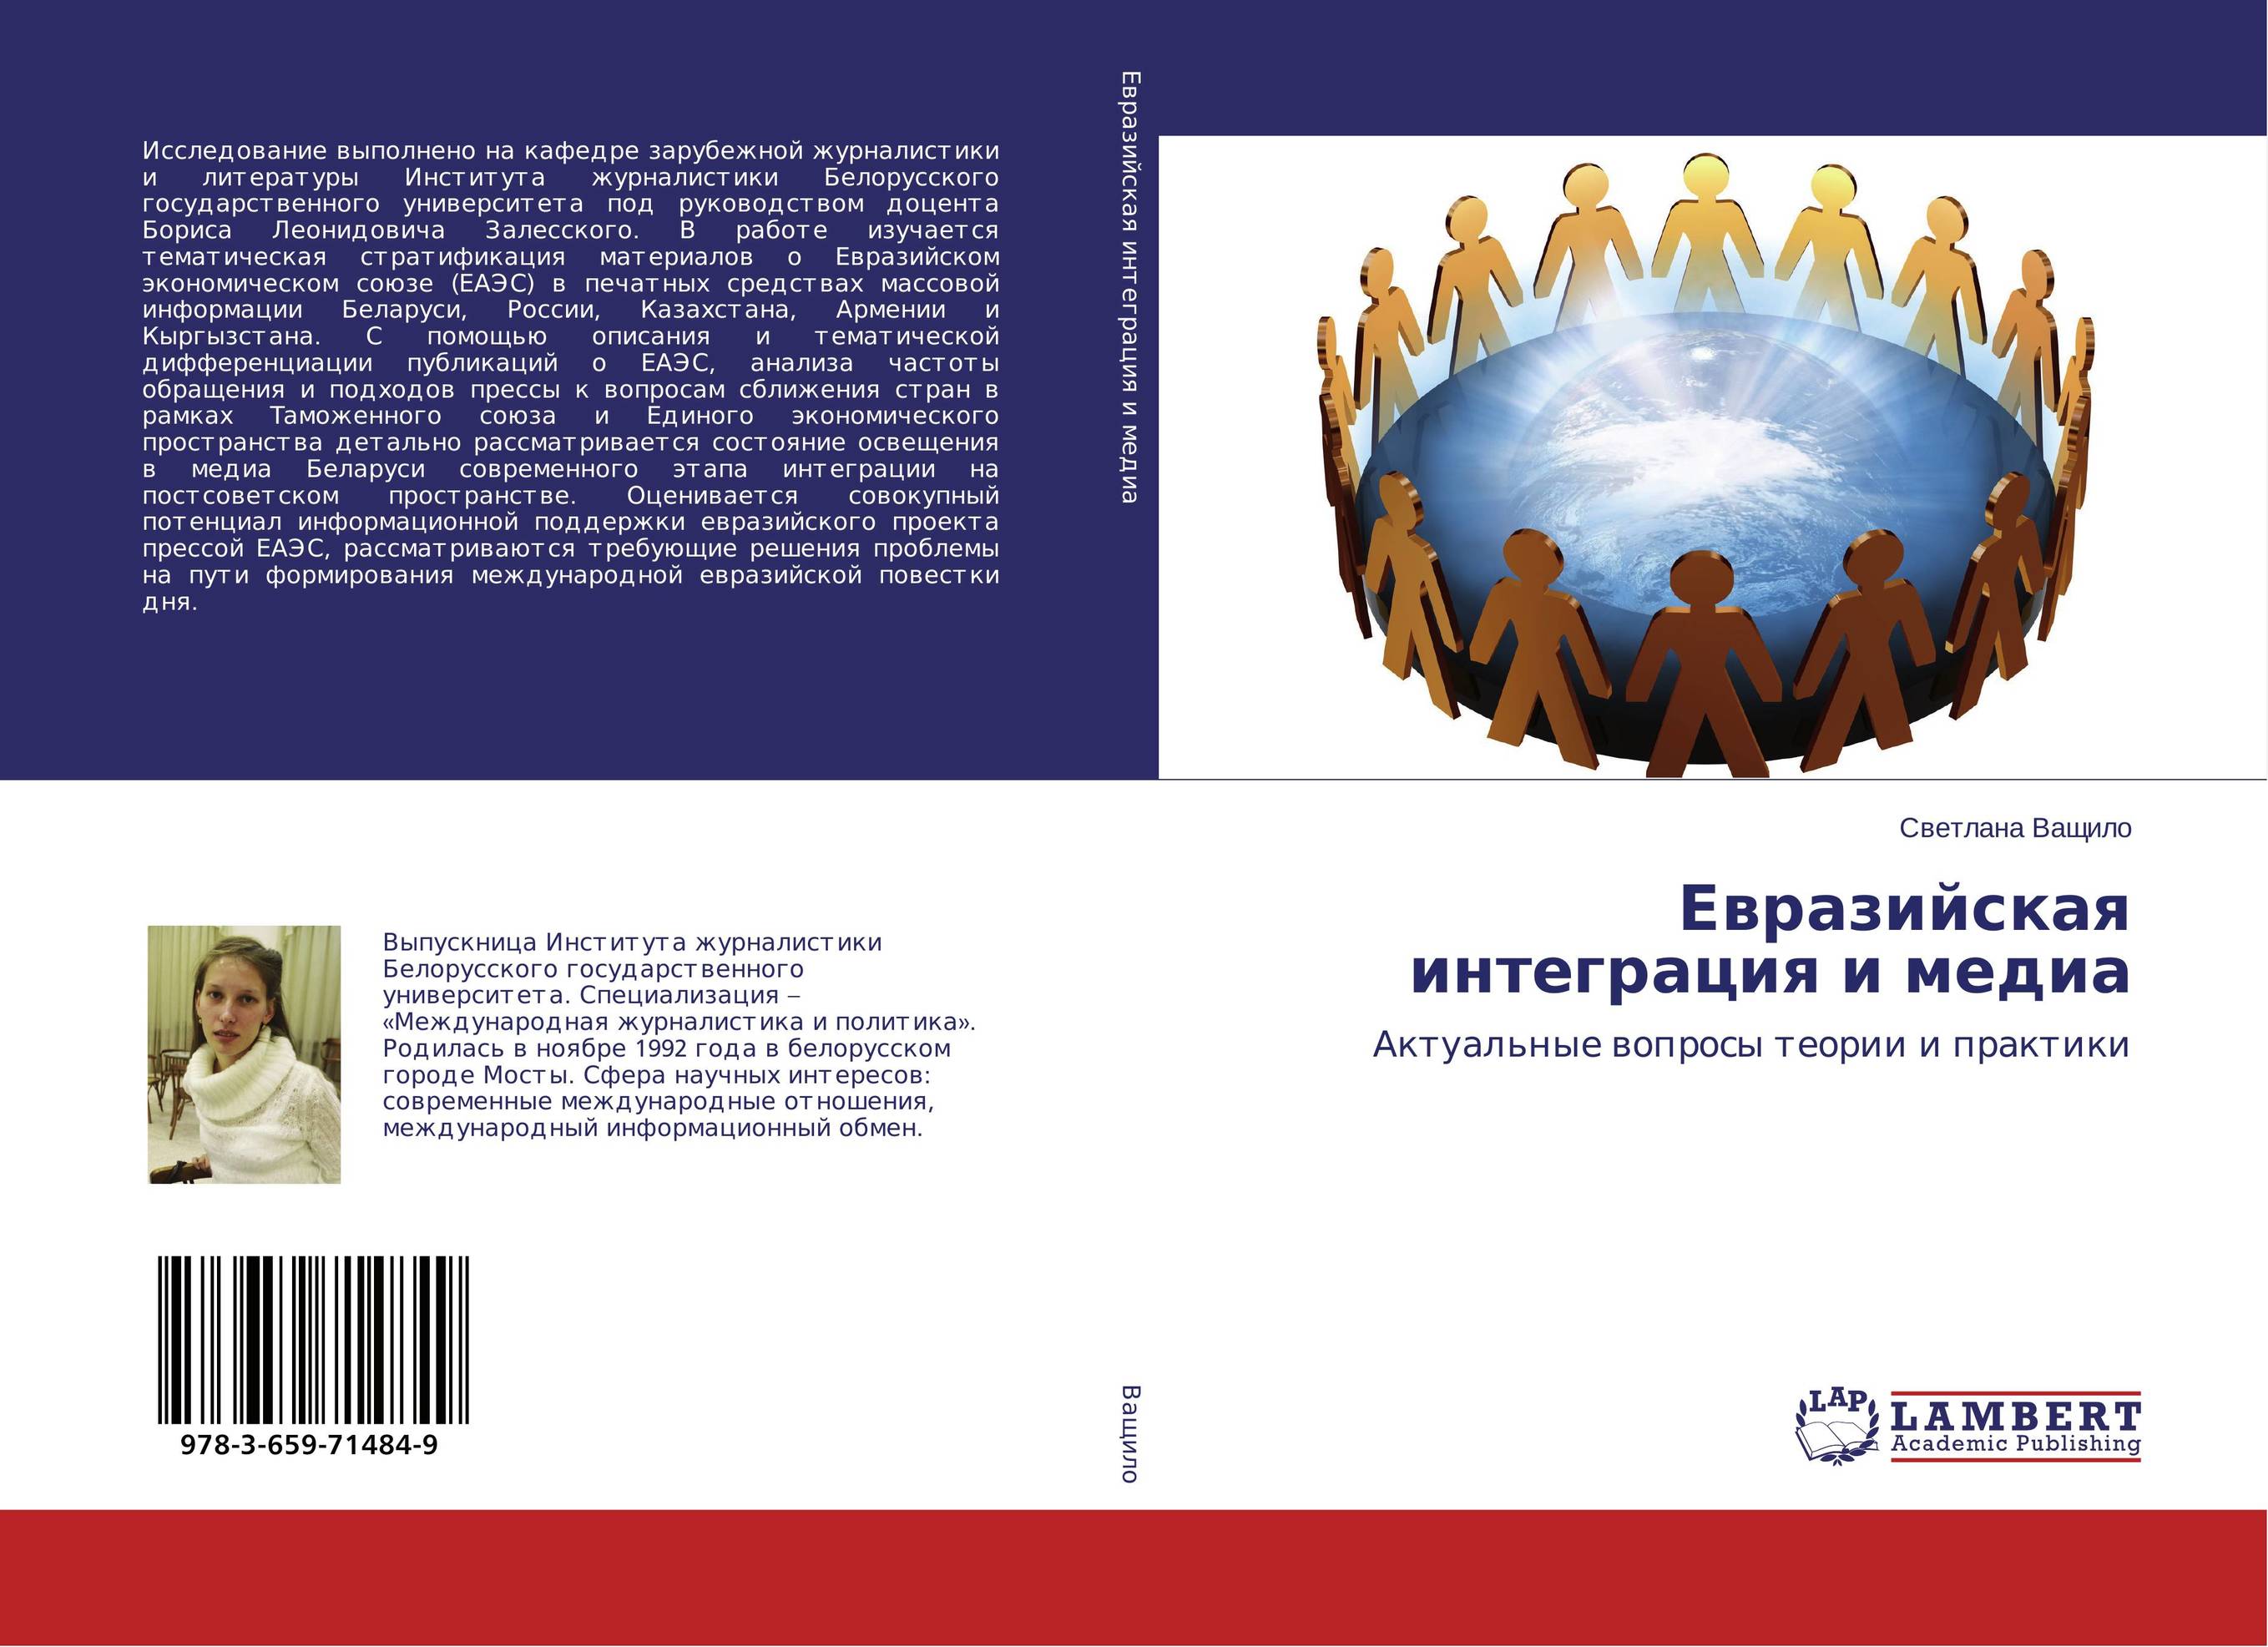 
        Евразийская интеграция и медиа. Актуальные вопросы теории и практики.
      